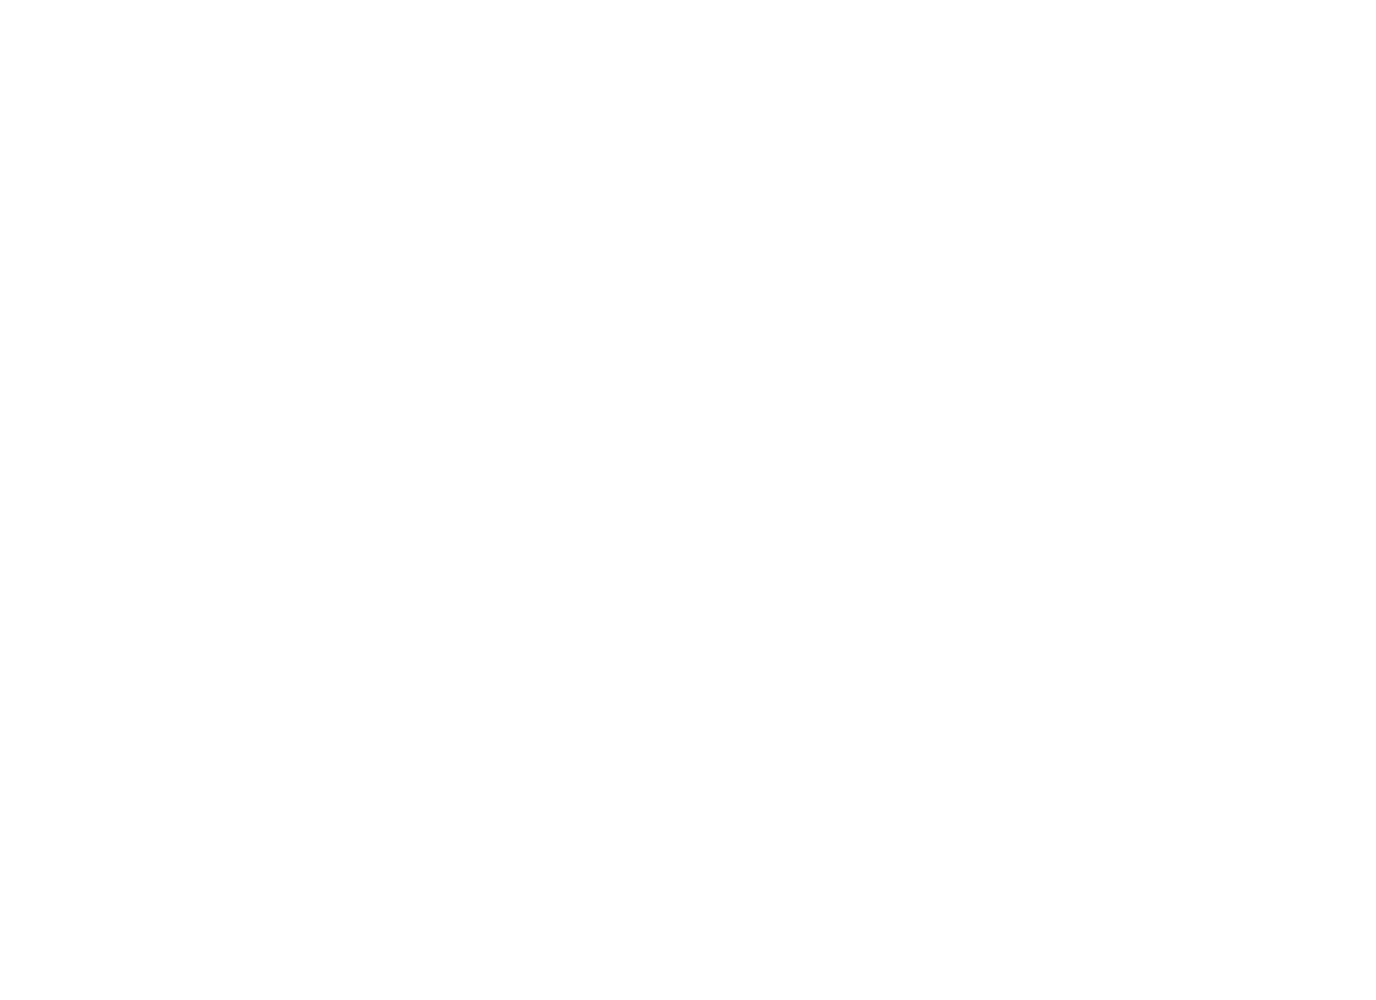 PAUL MAURER GOLF